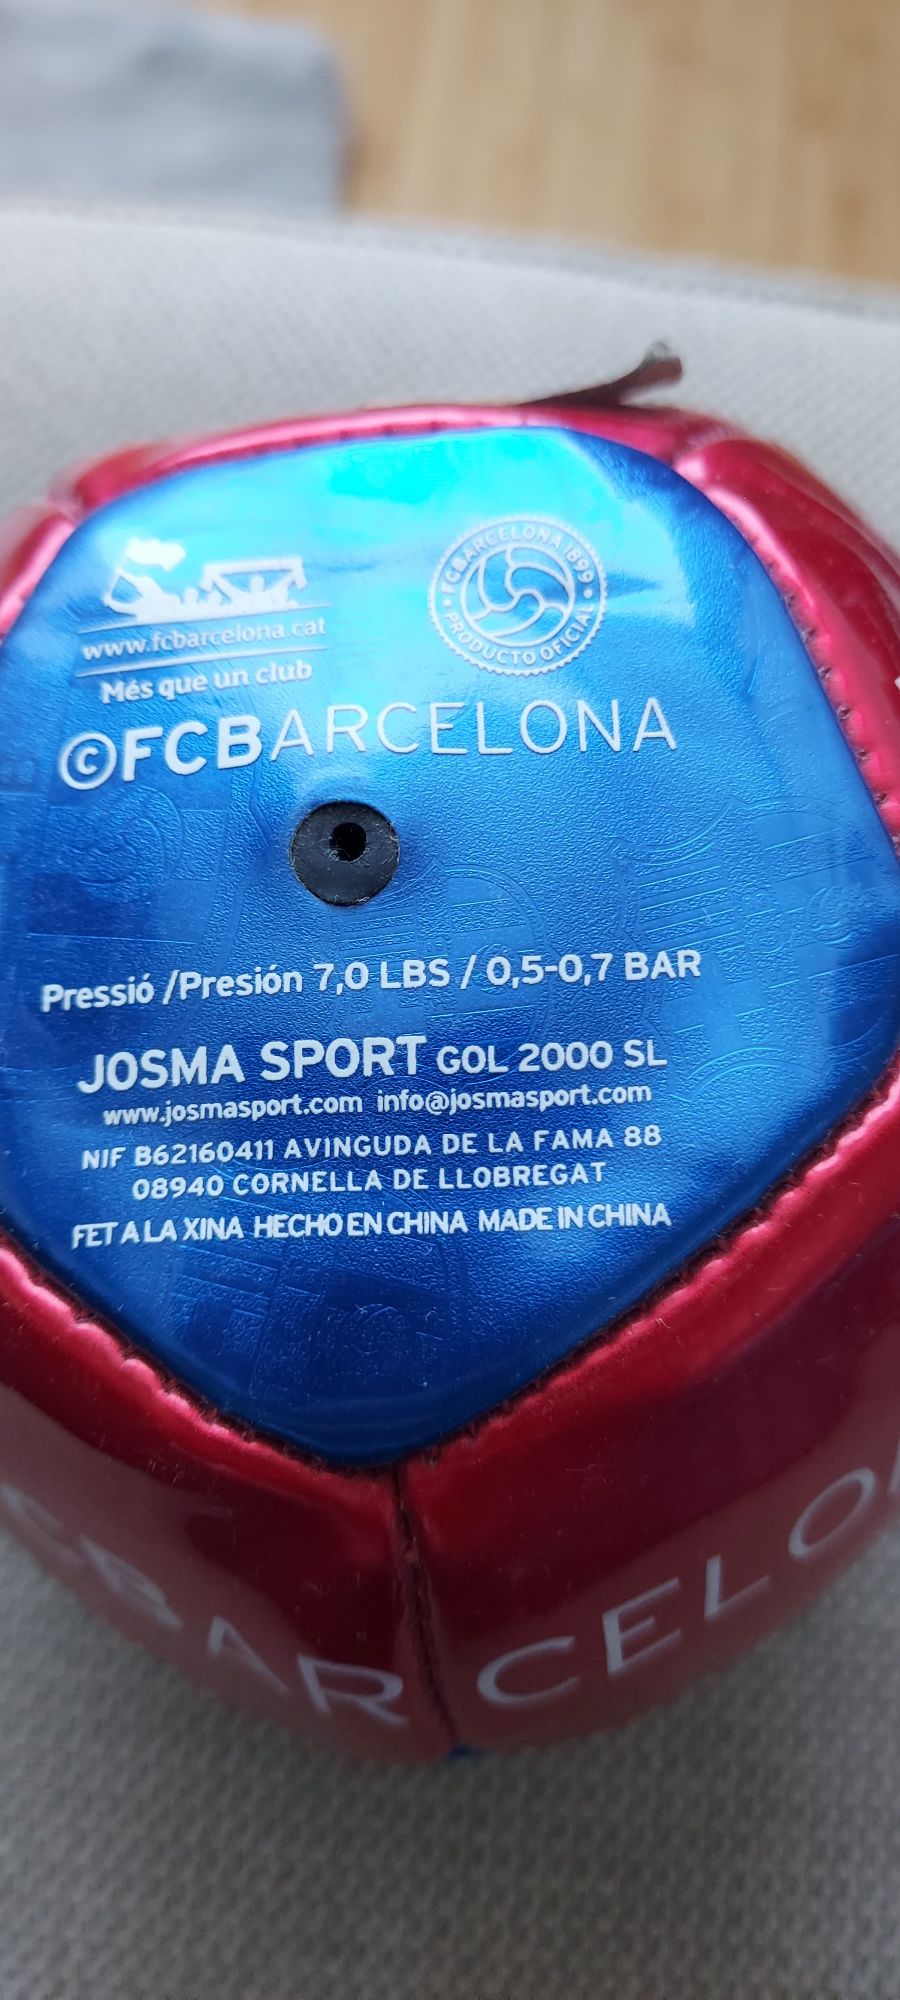 mini minge de fotbal FC Barcelona cu semnaturile jucatorilor..